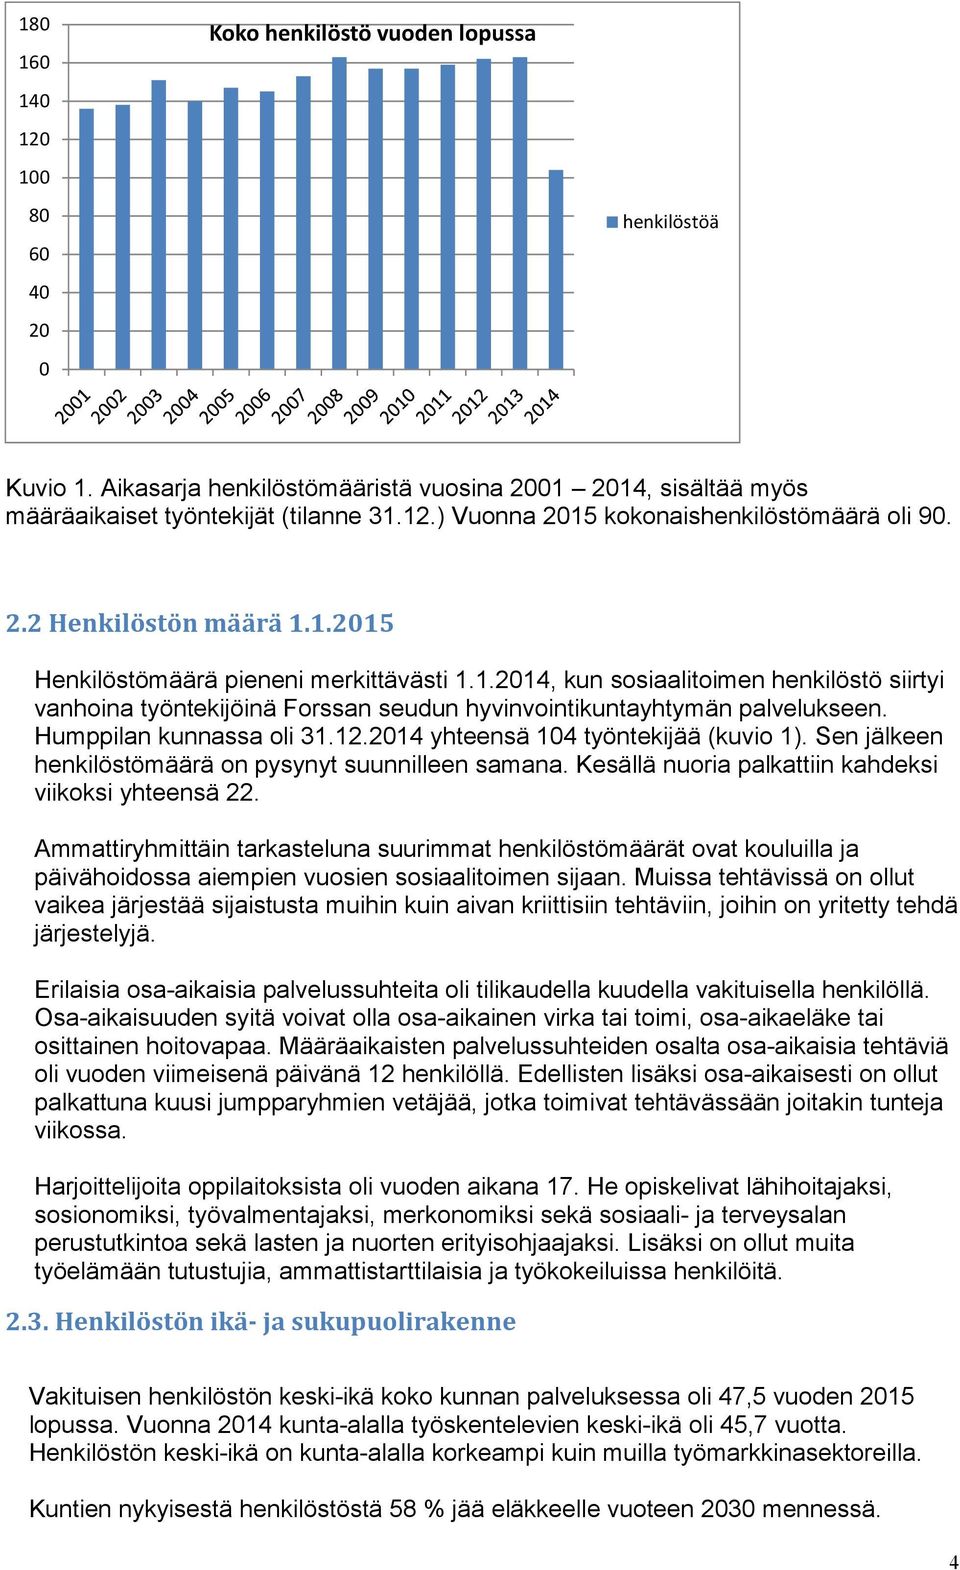 Humppilan kunnassa oli 31.12.2014 yhteensä 104 työntekijää (kuvio 1). Sen jälkeen henkilöstömäärä on pysynyt suunnilleen samana. Kesällä nuoria palkattiin kahdeksi viikoksi yhteensä 22.